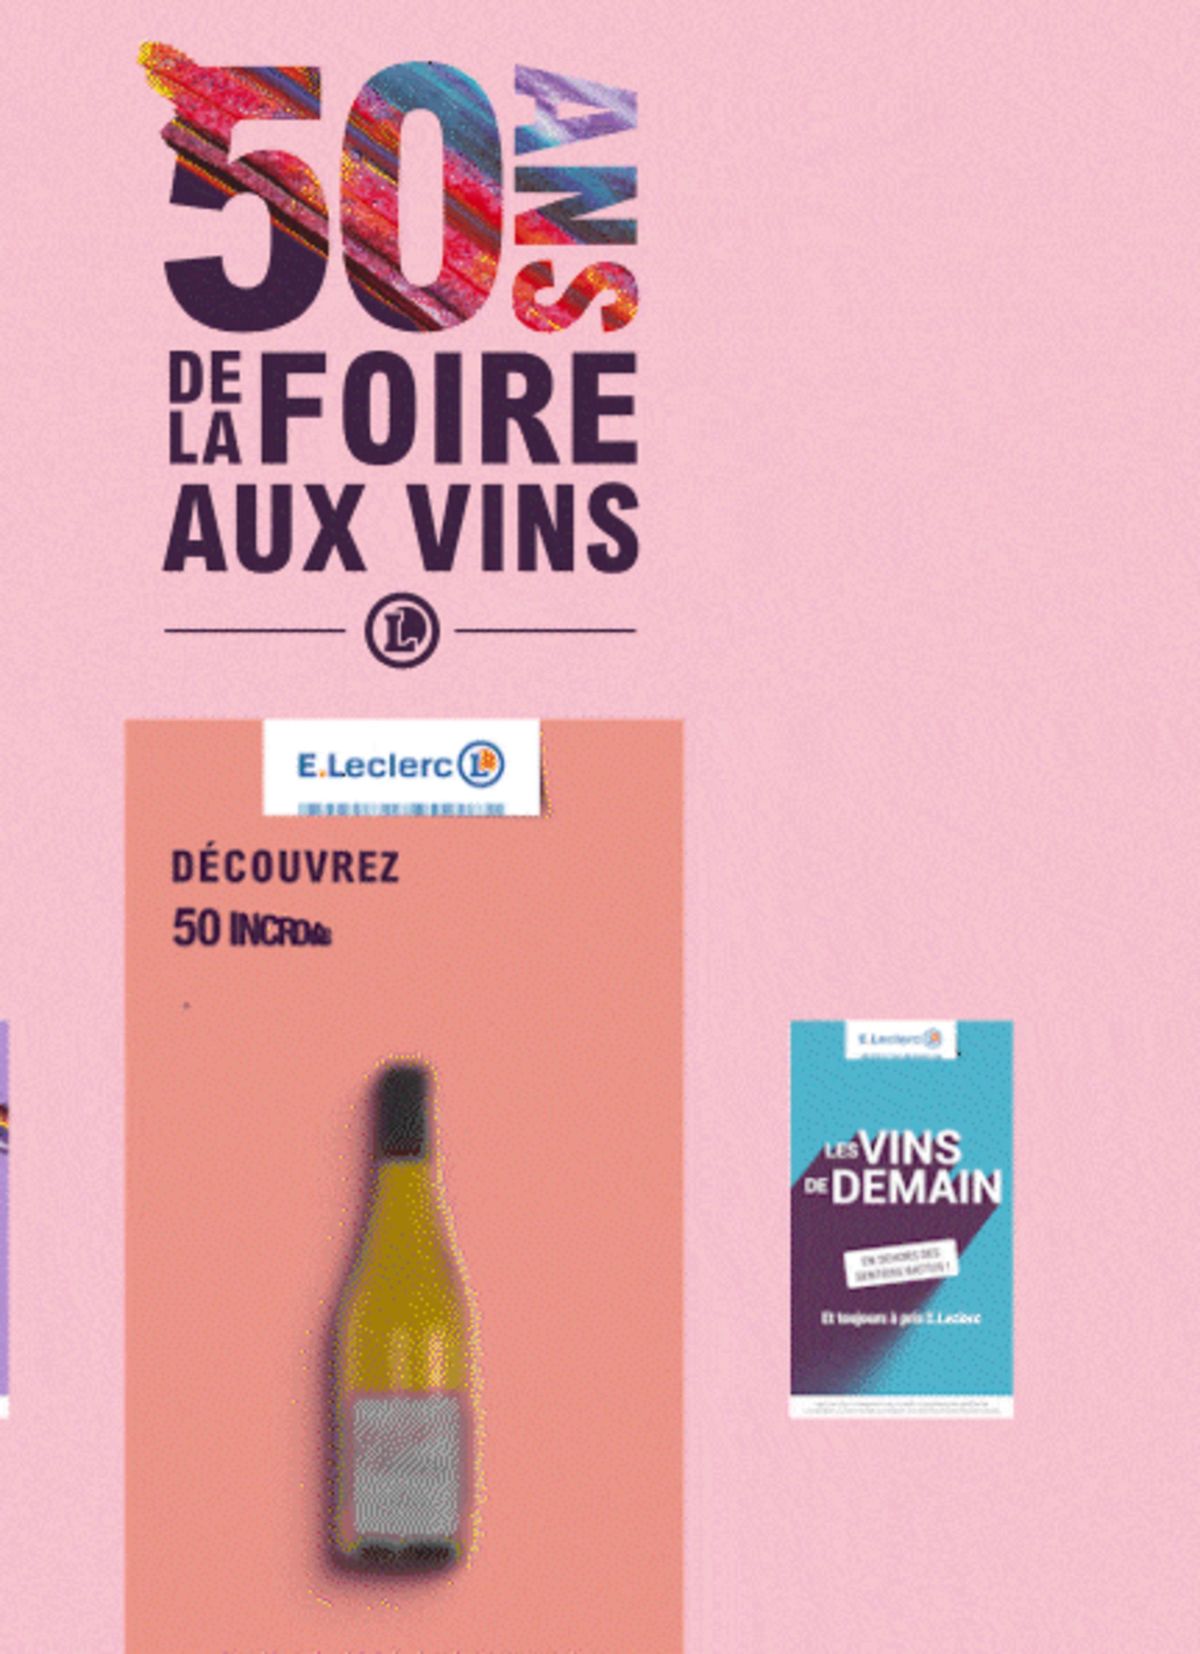 Catalogue Foire Aux Vins - Mixte, page 00749